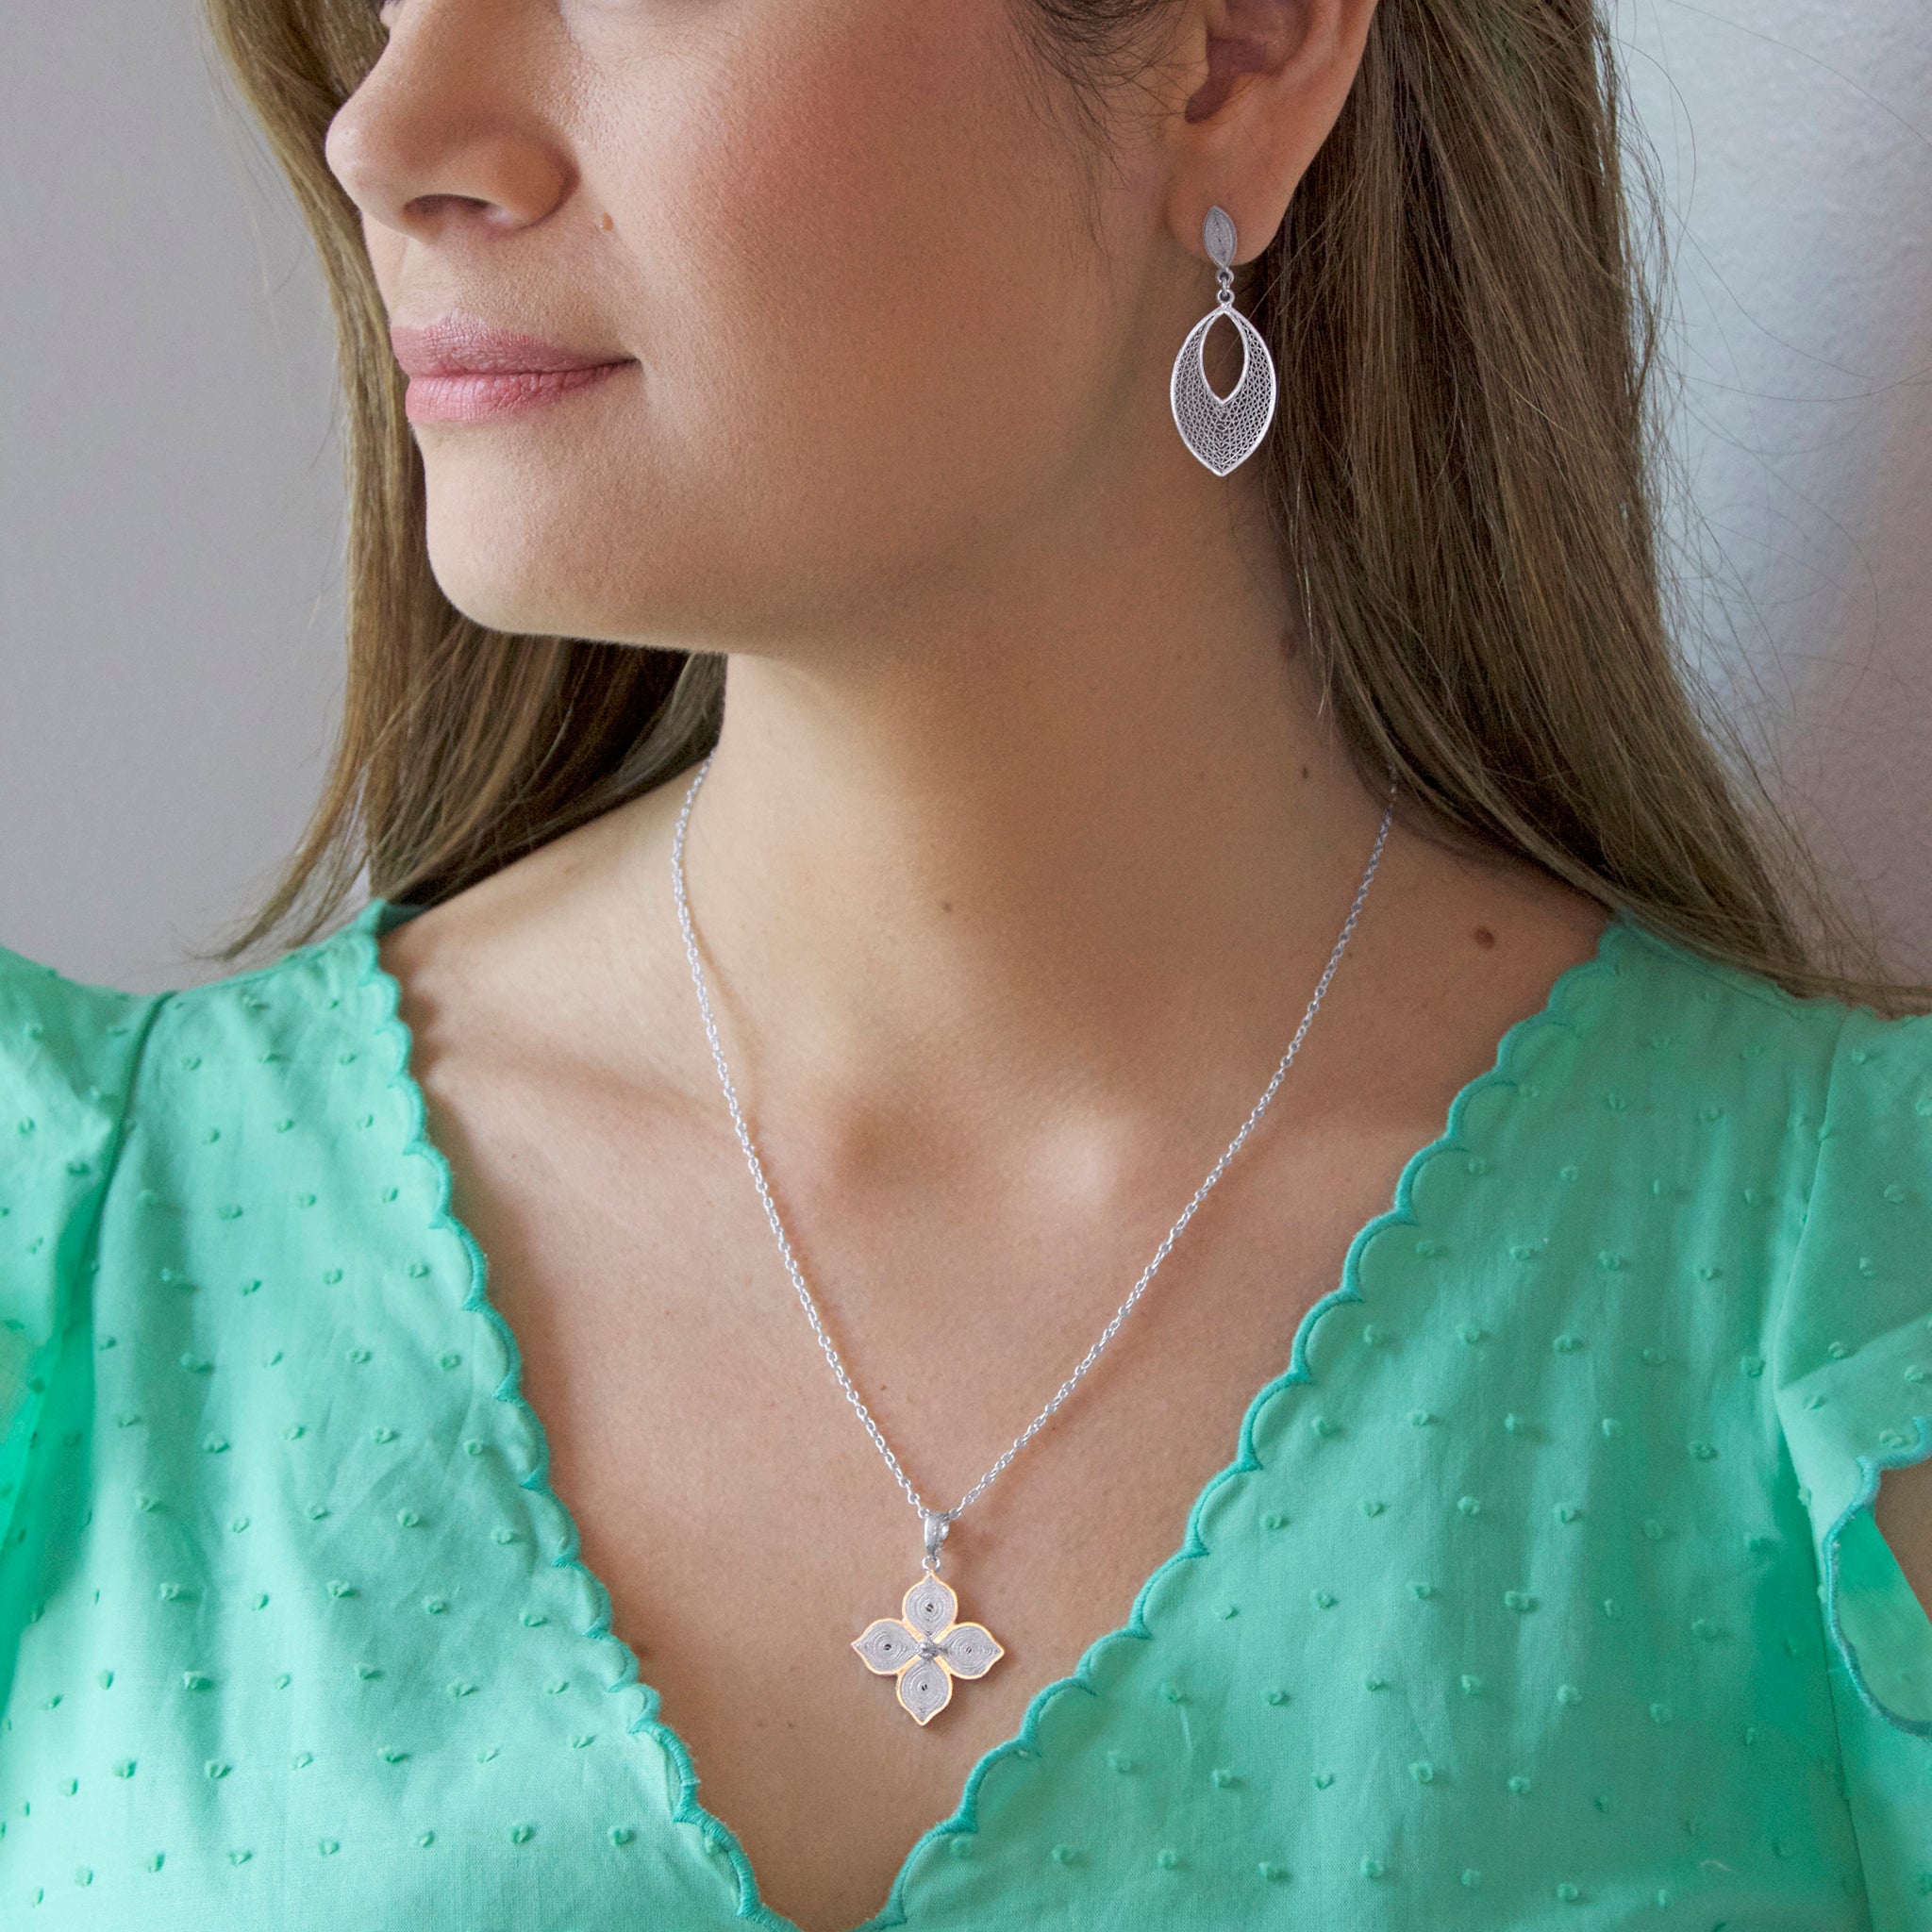 Small Silver Diamond Drop Necklace. $22.00, via Etsy. | Diamond necklace  simple, Diamond drop necklace, Simple necklace